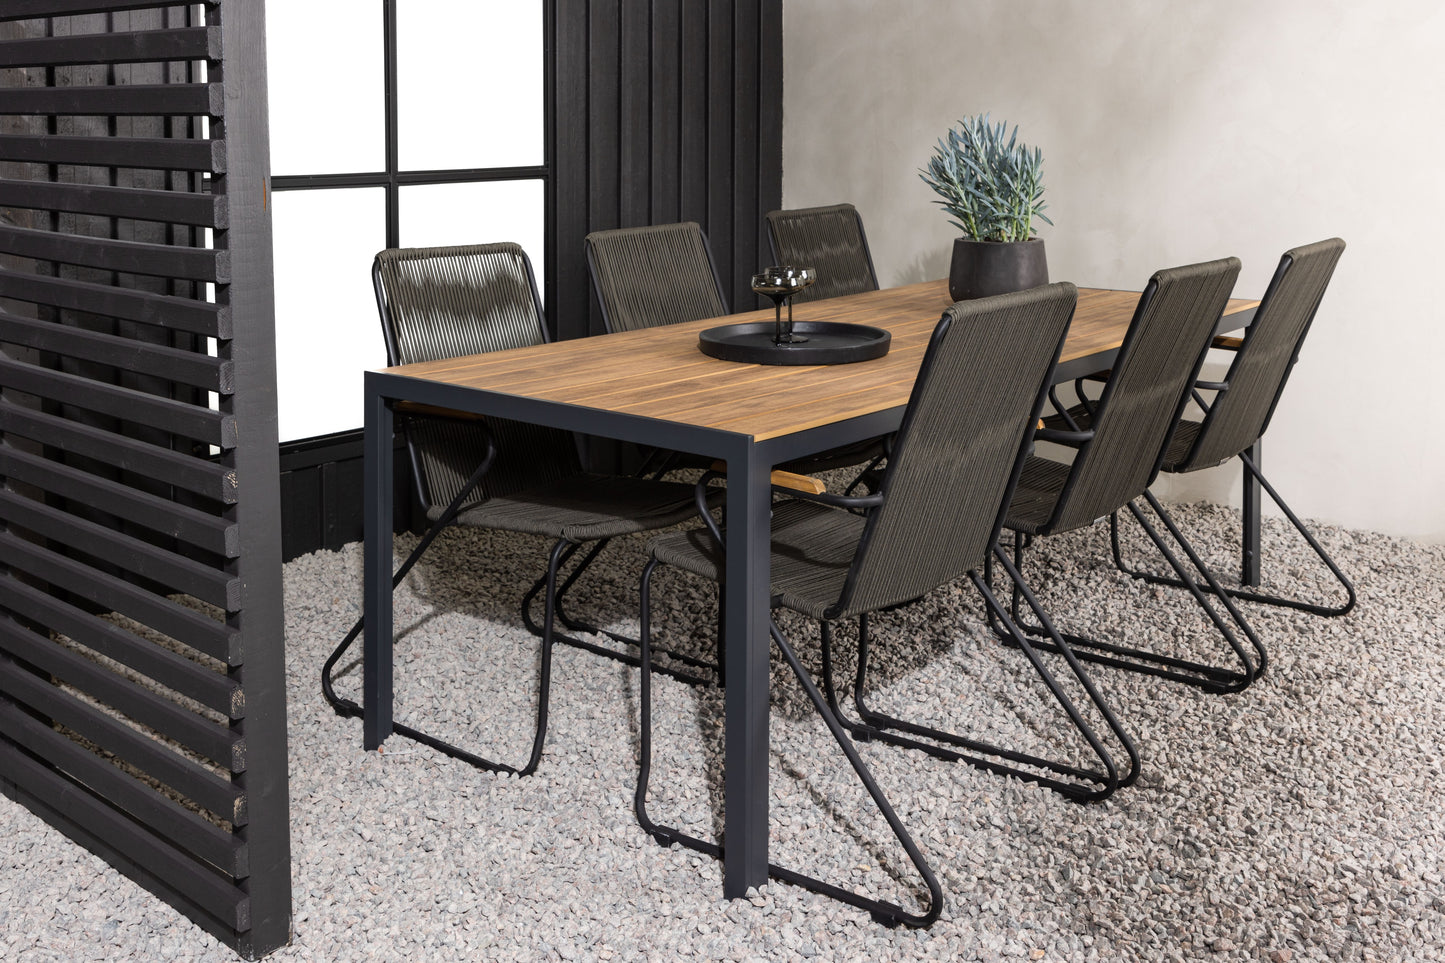 Break - Spisebord, Aluminium - Sort / Natur Rektangulær 90*200* + Bois stol Stål - Sort / Mørkegråt Reb